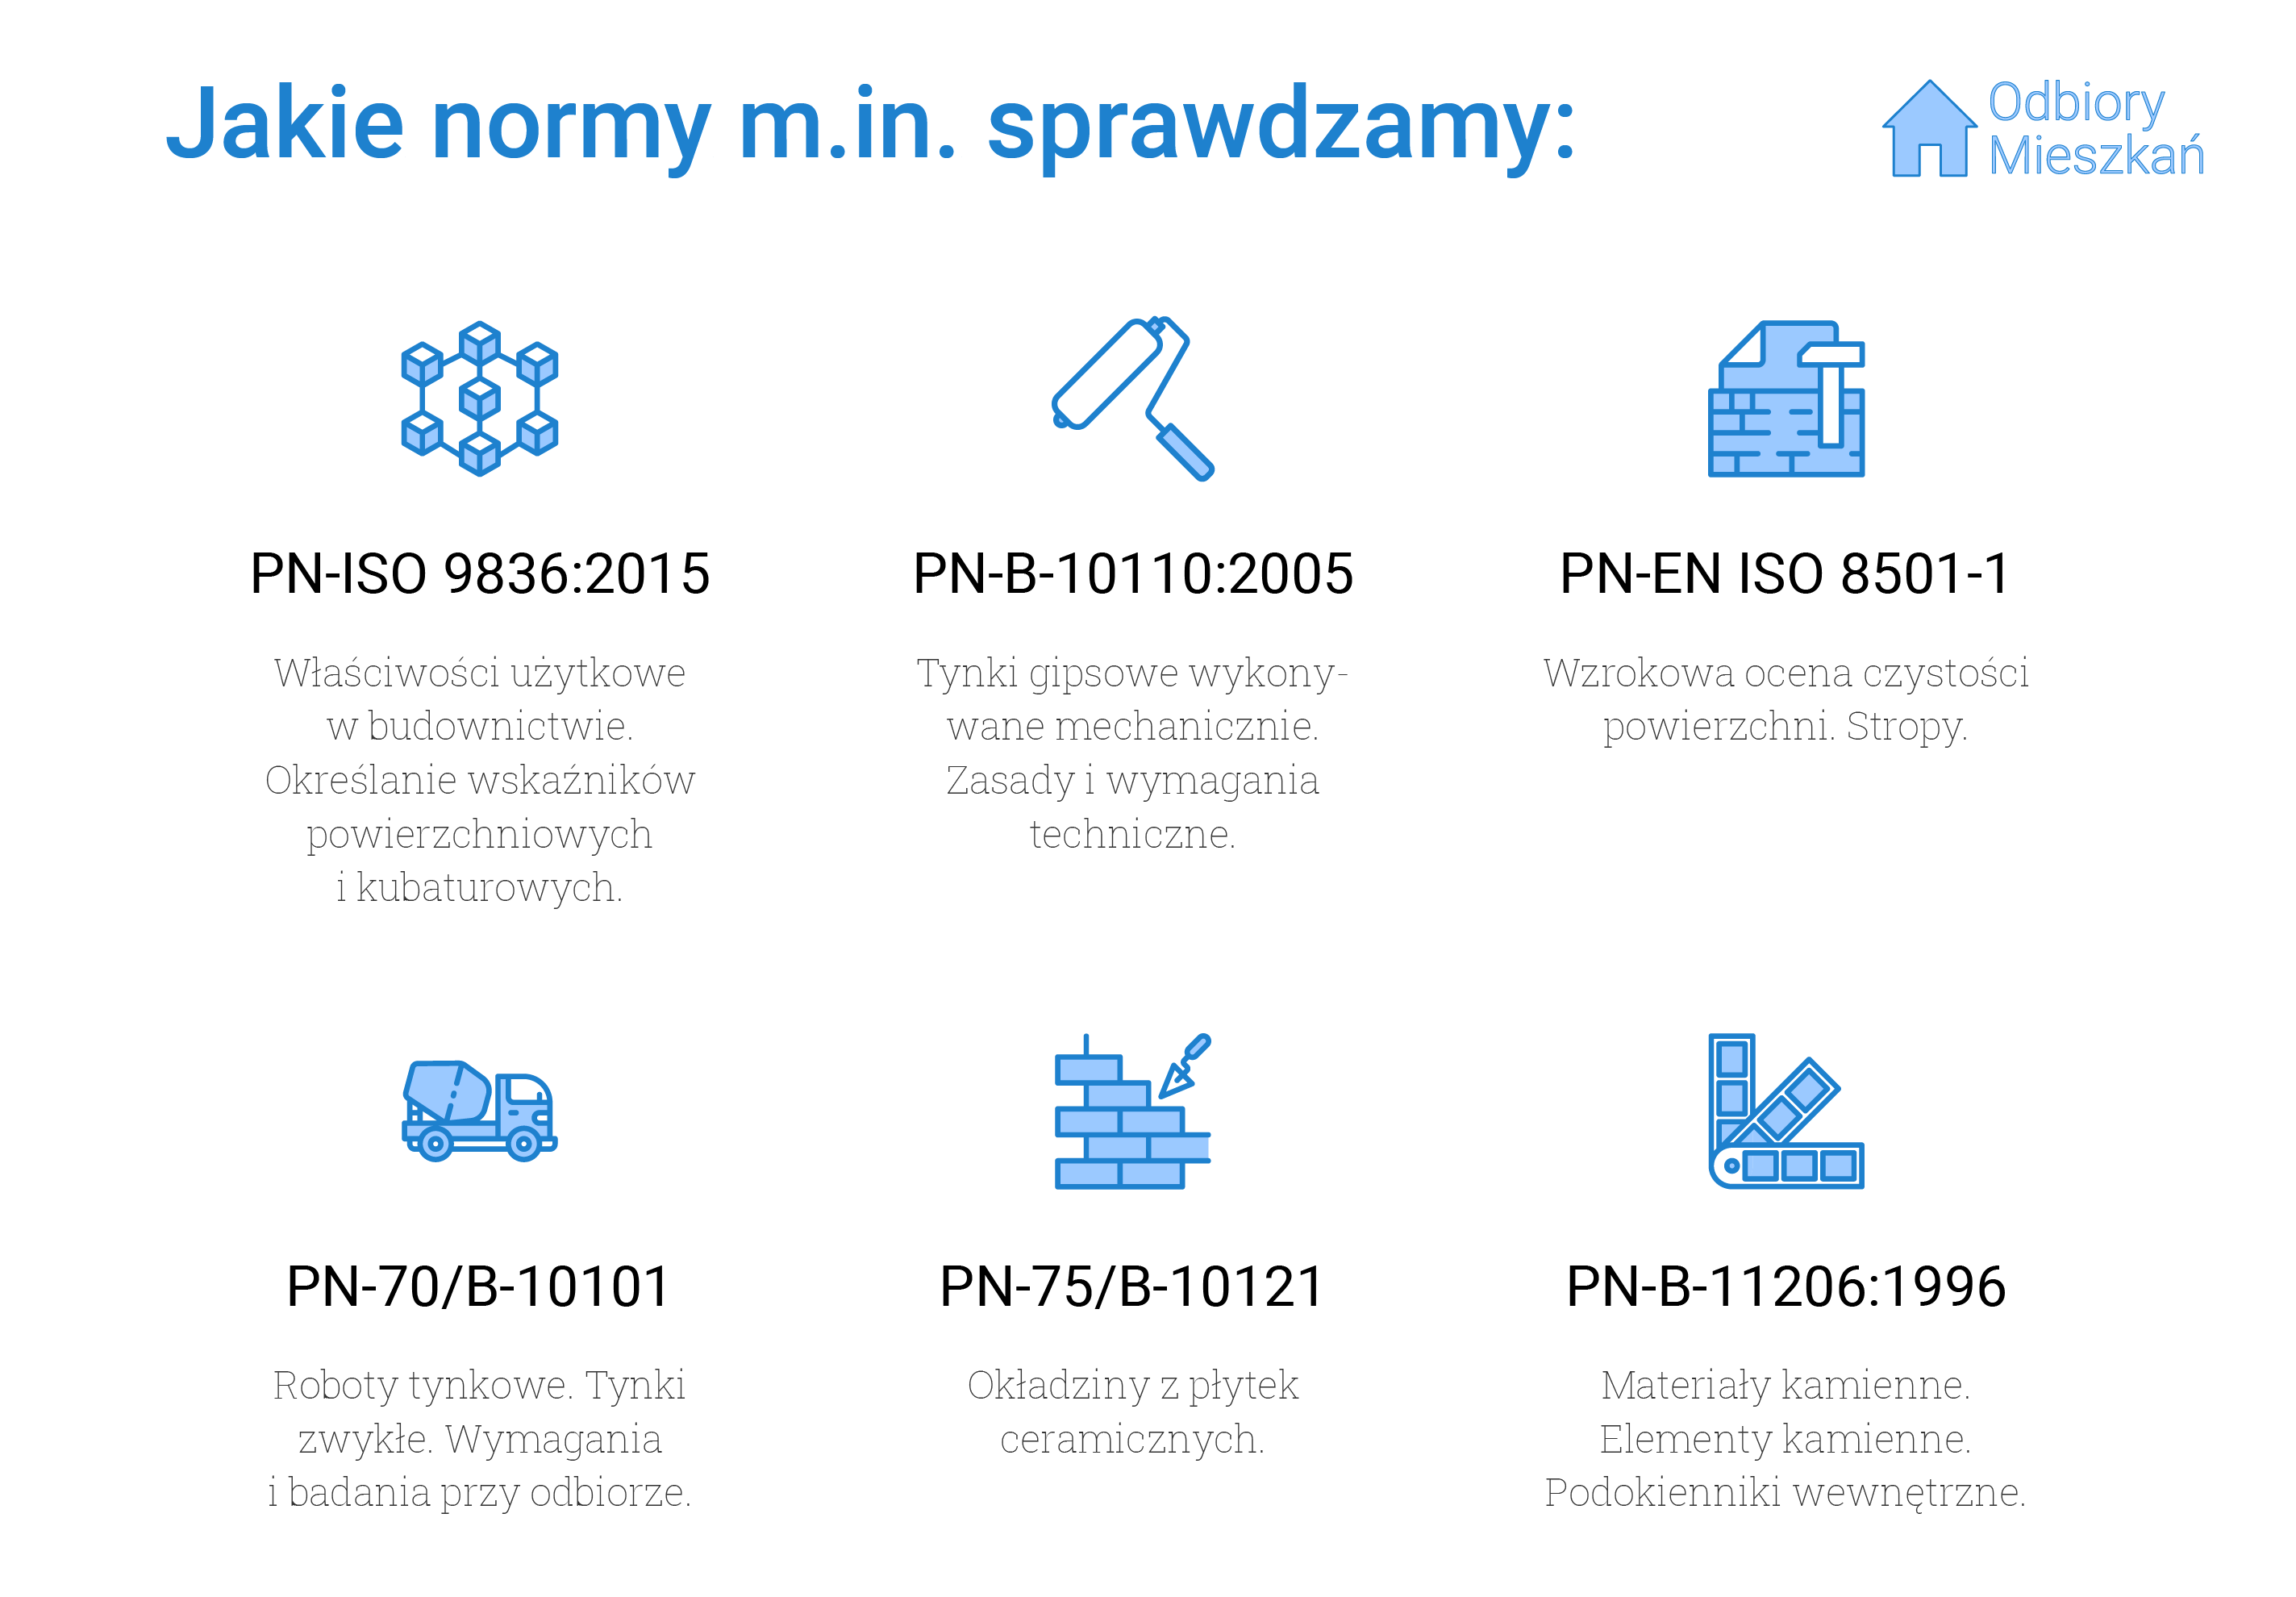 Normy, jakie sprawdzamy podczas odbioru technicznego w Poznaniu: PN-ISO 9836:2015 - właściwości użytkowe w budownictwie i określanie wskaźników powierzchni kubaturowych, PN-B-10110:2005 - tynki gipsowe wykonywane mechanicznie oraz zasady i wymagania techniczne wykonywania tynków, PN-EN ISO 8501-1, czyli wzrokowa ocena czystości powierzchni oraz stropy, PN-70/B-10101 - roboty tynkowe, tynki zwykłe oraz wymagania przy odbiorze tynków, PN-75/B10121, czyli okładziny z płytek ceramicznych oraz PN-B-11206:1996, czyli materiały i elementy kamienne oraz podokienniki wewnętrzne.